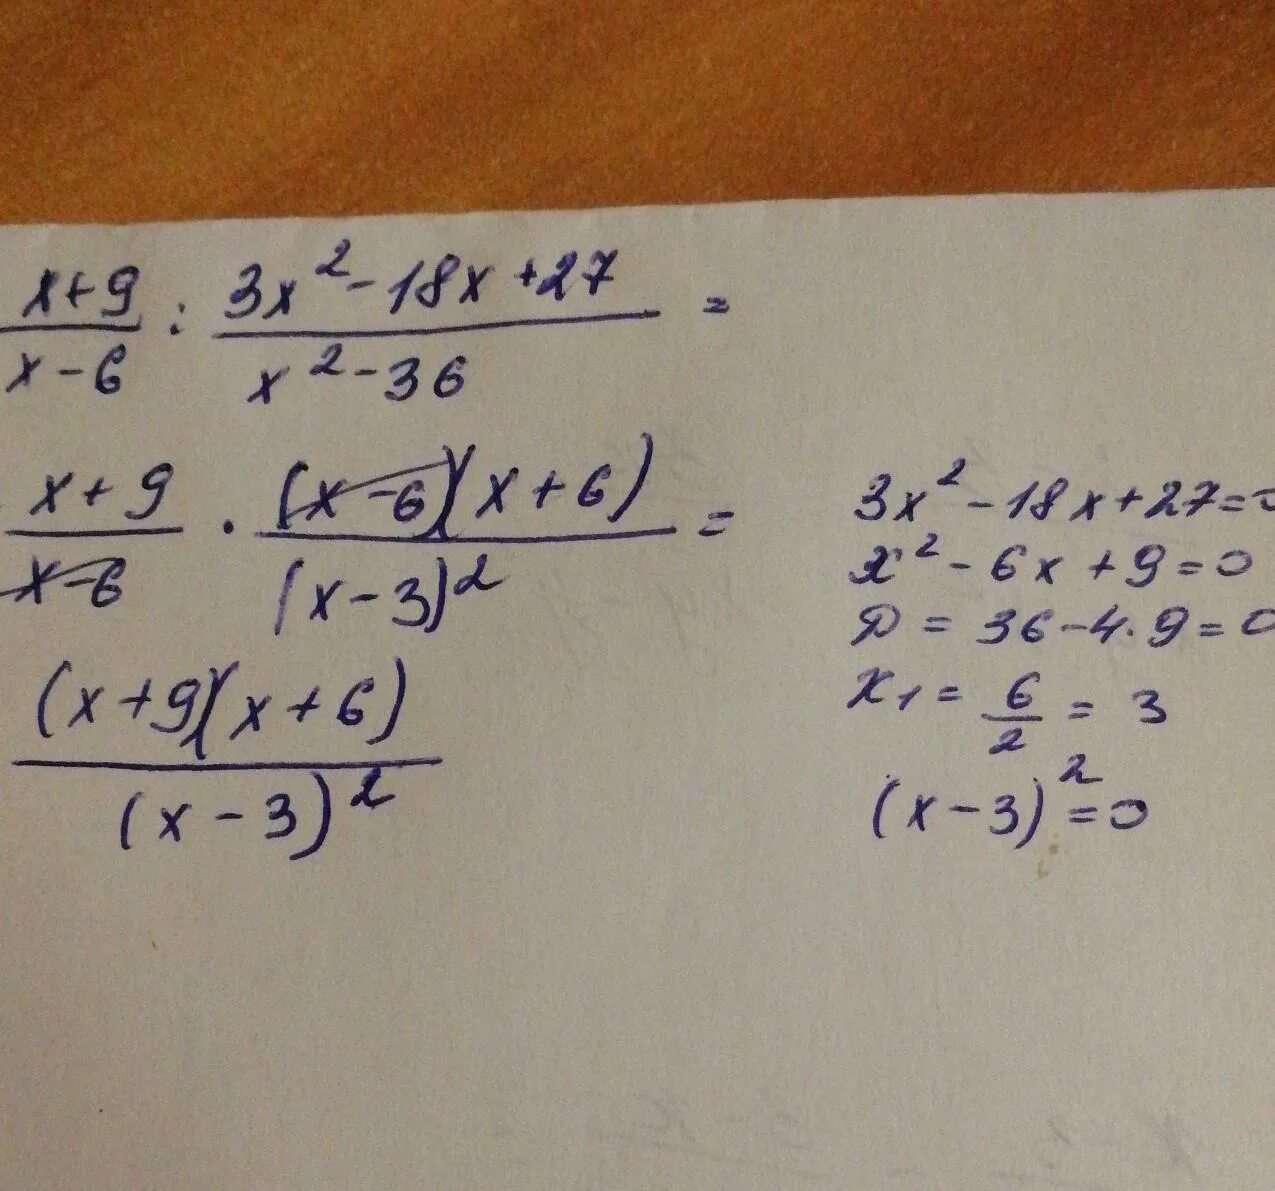 Упростите 3x x2 x 3. Упростить выражение x2-9/x-6 2 - 27 6x-x 2. X-9/x2-9 3/3x-x2 упростите выражение. 3/X+3+3/x2-3x+2x/9-x2 упростите выражение. X^3-9x^2+27x-27.